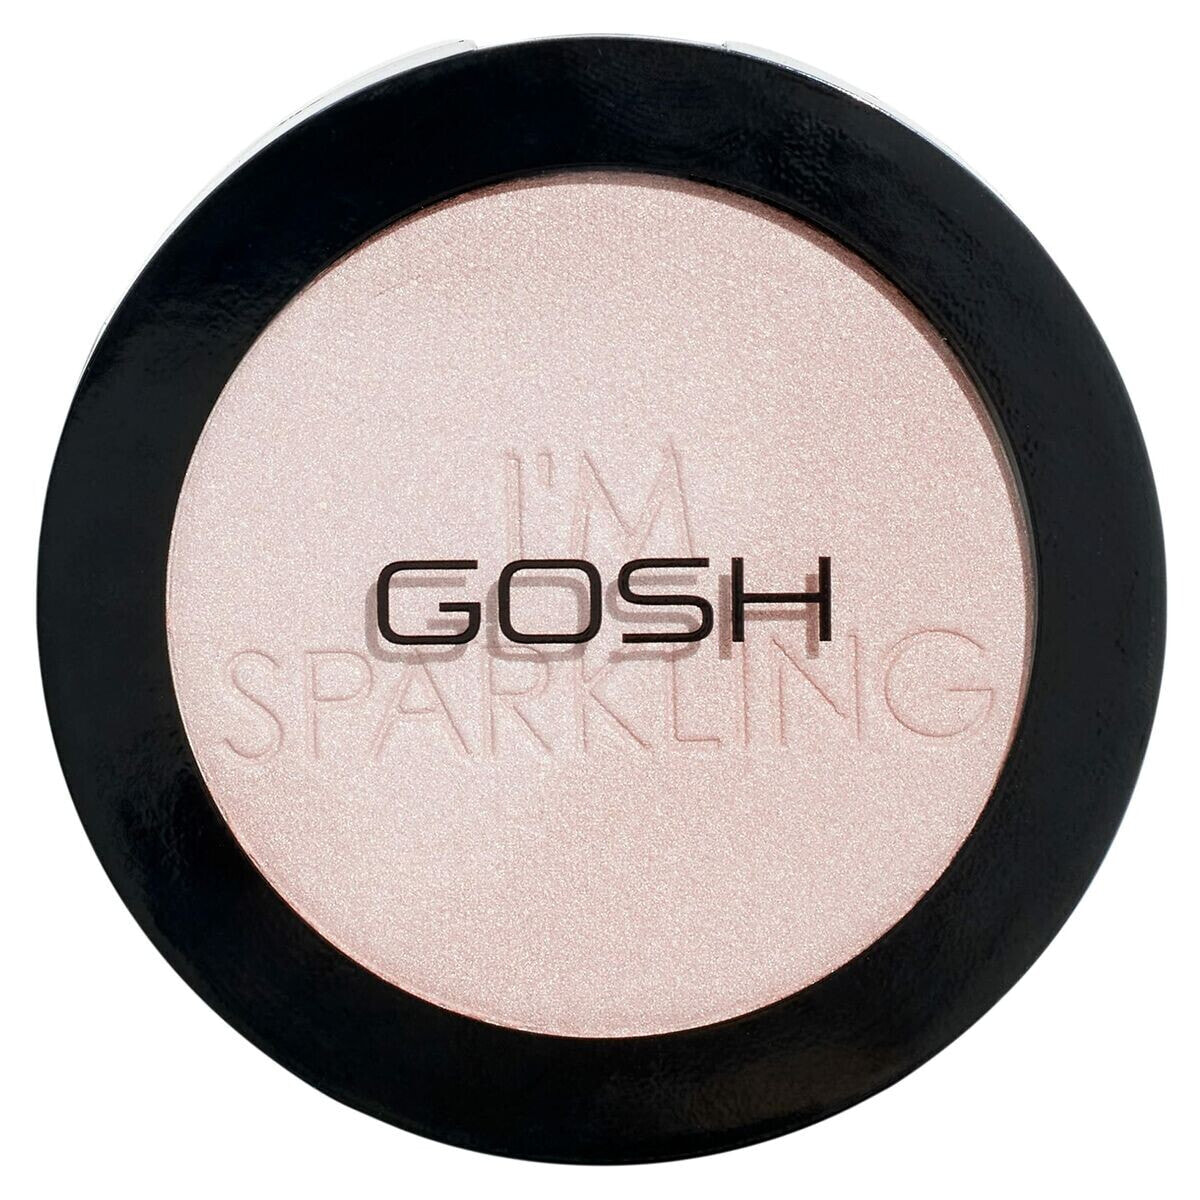 Средство, подсвечивающее кожу Gosh Copenhagen I'm Sparkling порошкообразный Nº 003 Pearl dust 5,5 g